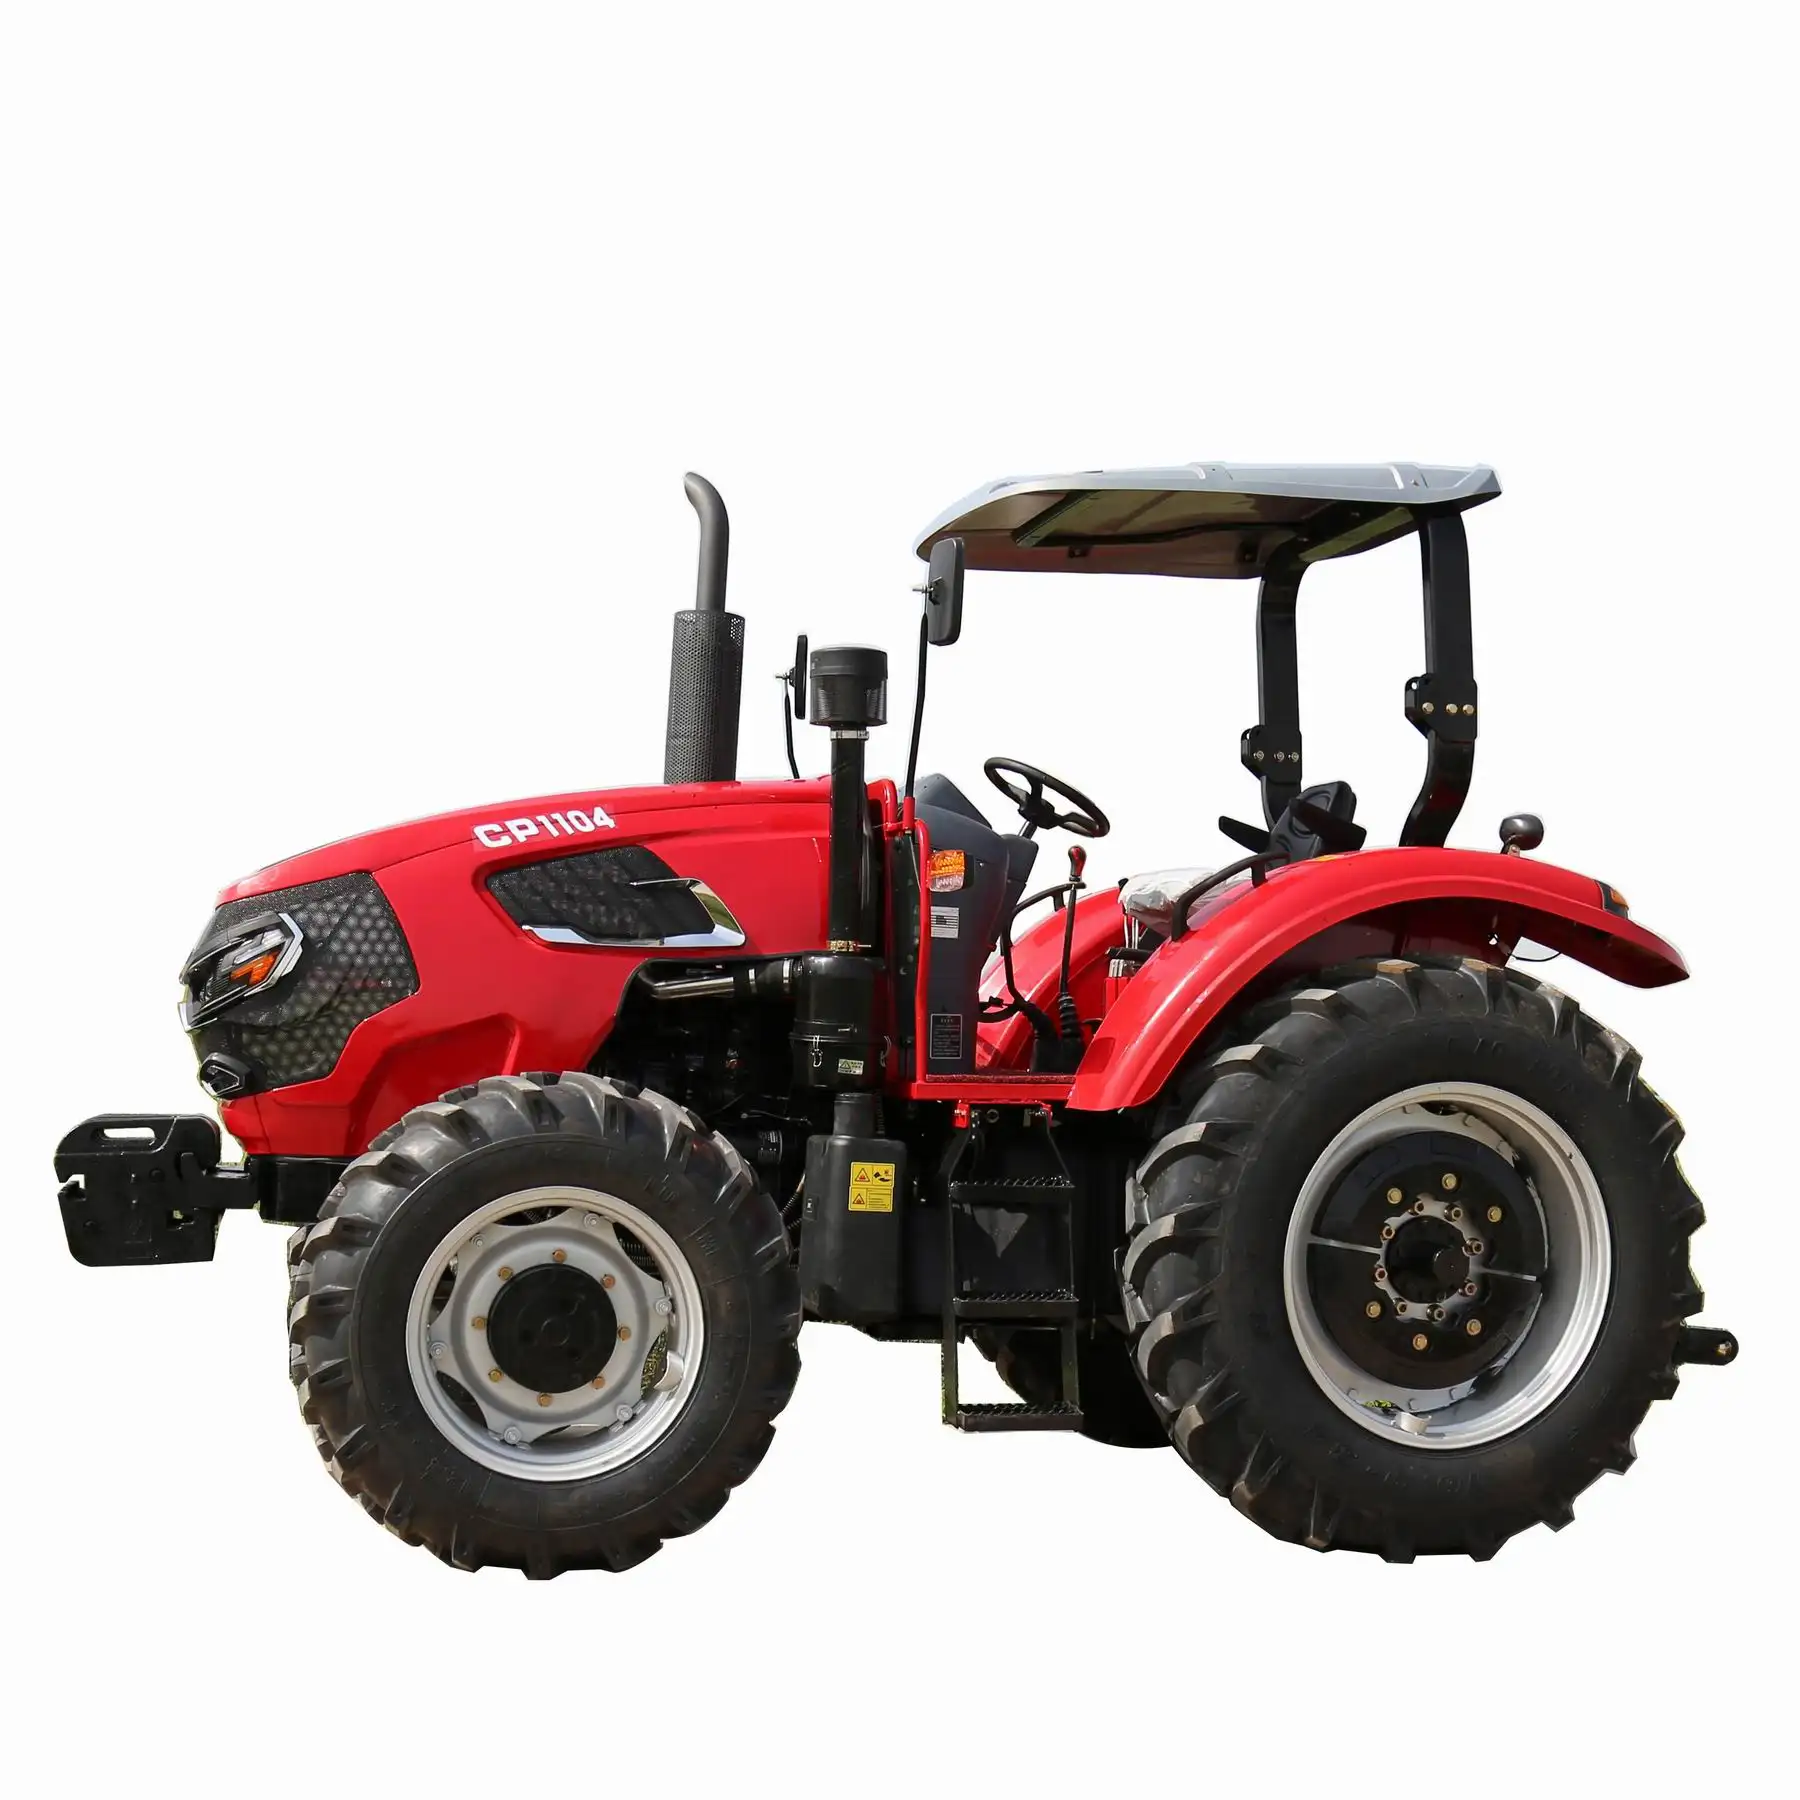 Tractor agrícola 4x4 110hp 100 hp, equipo agrícola 4wd, 110 hp, precio agrícola 100hp